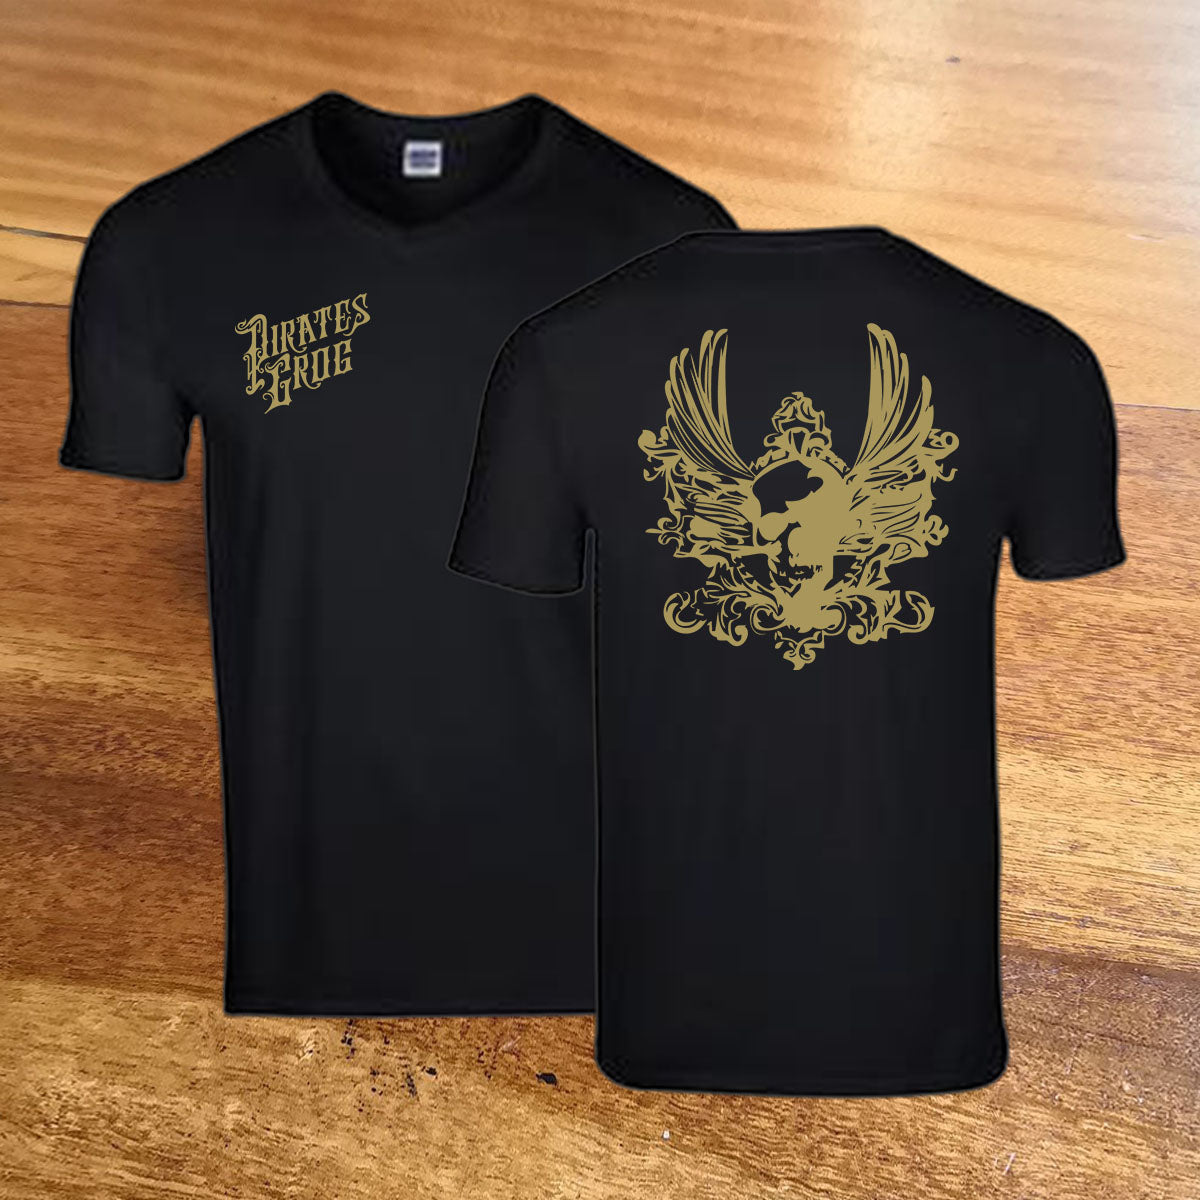 Pirate's Grog - Skull & Wings T-Shirt